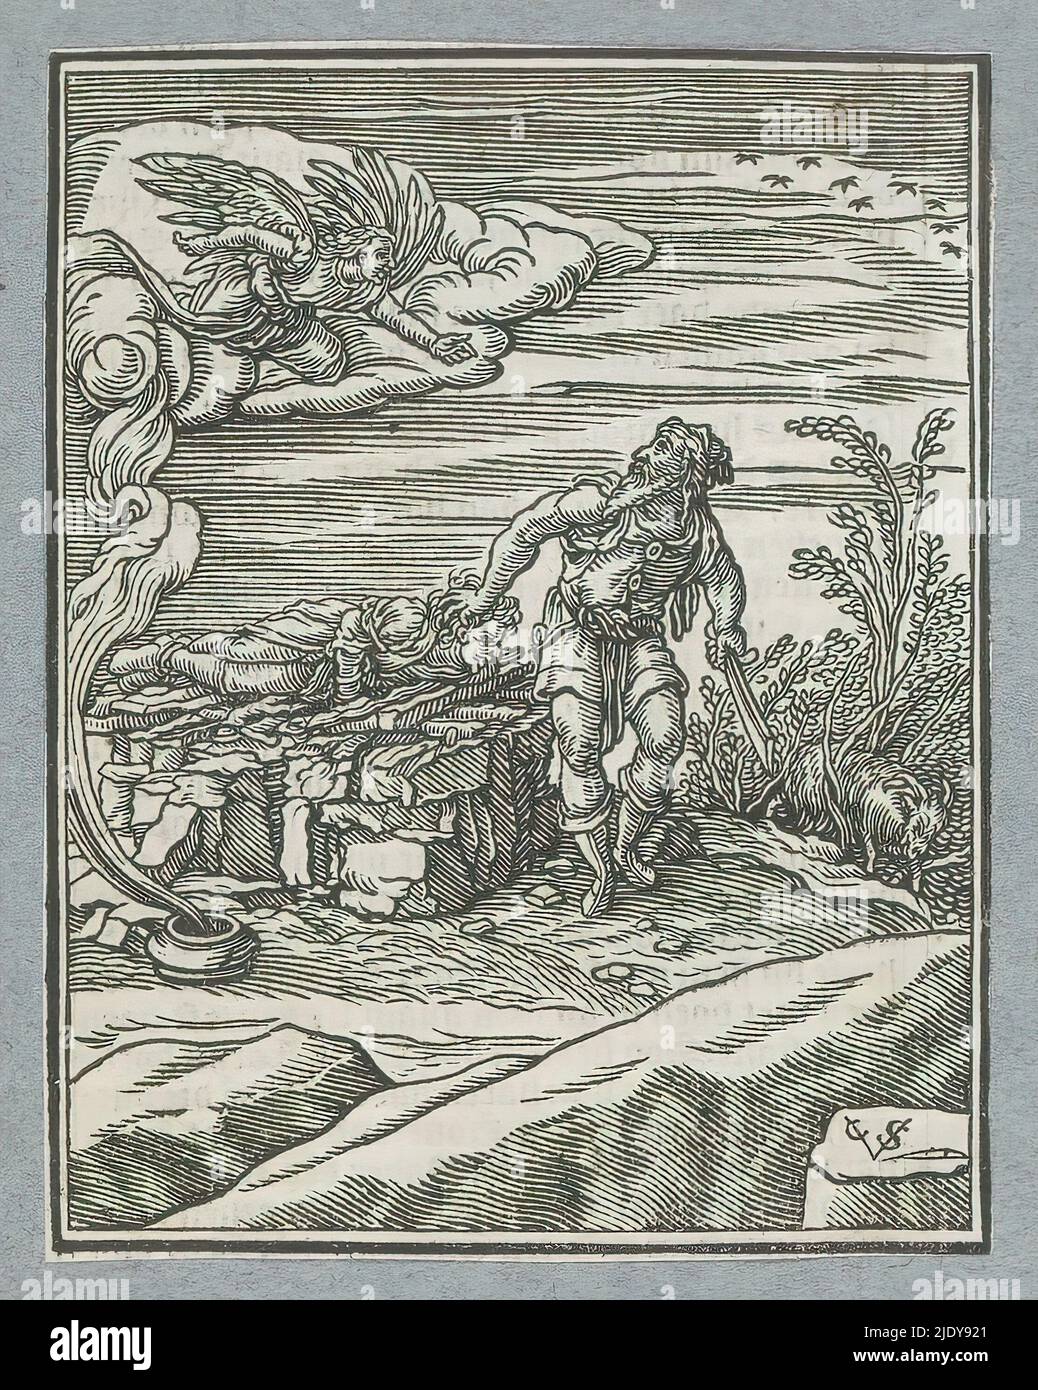 Sacrifice d'Abraham, Abraham lève son couteau pour tuer son fils Isaac, qui est lié sur l'autel. Cependant, un ange l'arrête et pointe vers un bélier qui peut être sacrifié. L'imprimé fait partie d'un album., imprimeur: Christoffel van Sichem (II), (mentionné sur l'objet), imprimeur: Christoffel van Sichem (III), (mentionné sur l'objet), après impression par: Veit Rudolf Specklin, Amsterdam, 1645 - 1646, papier, impression typographique, hauteur 111 mm × largeur 86 mm Banque D'Images